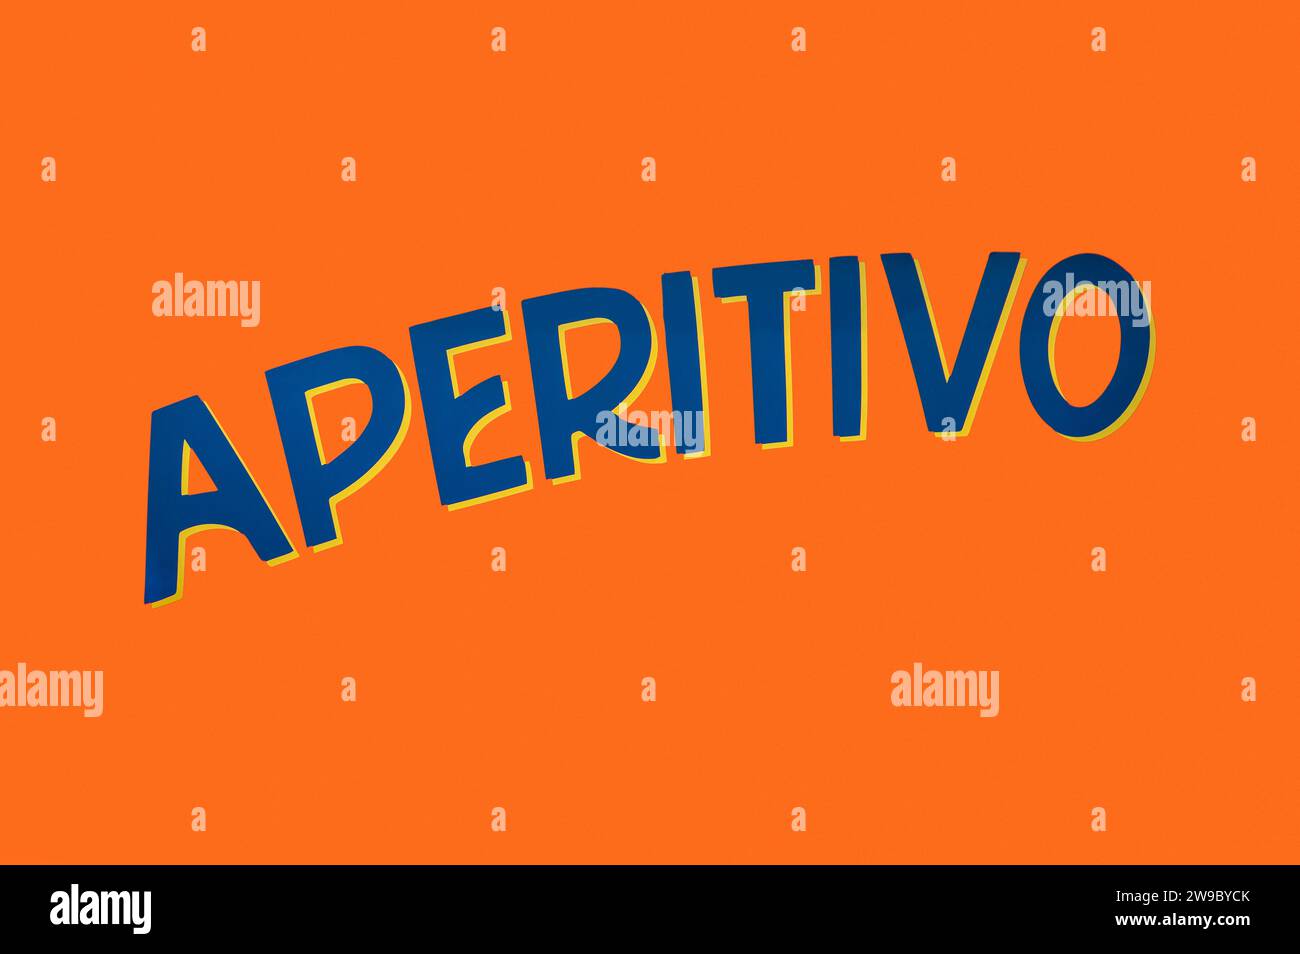 Inscription du mot Aperitivo de couleur bleu marine peinte en lettres majuscules avec une nuance jaune sur fond orange informant la disponibilité du tradi italien Banque D'Images